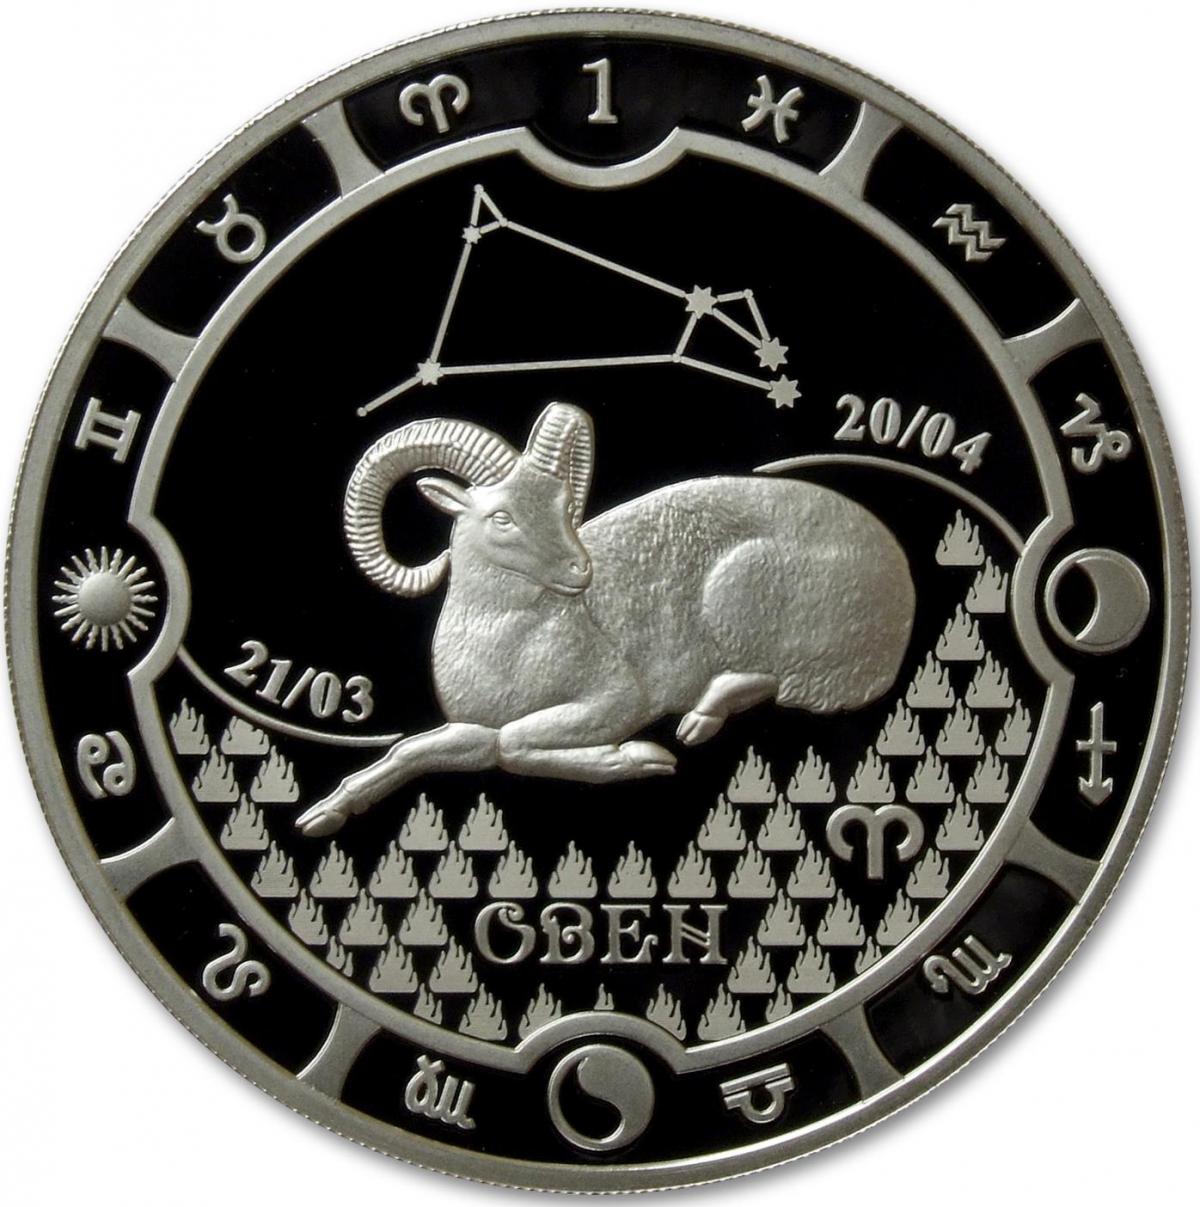 Монеты со знаком. Серебряная монета Габона "знаки зодиака - рыбы". Монеты знаки зодиака Габон серебро. Монеты "знаки зодиака Стрелец" (Камерун). Серебряные монеты знаки зодиака Россельхозбанк.